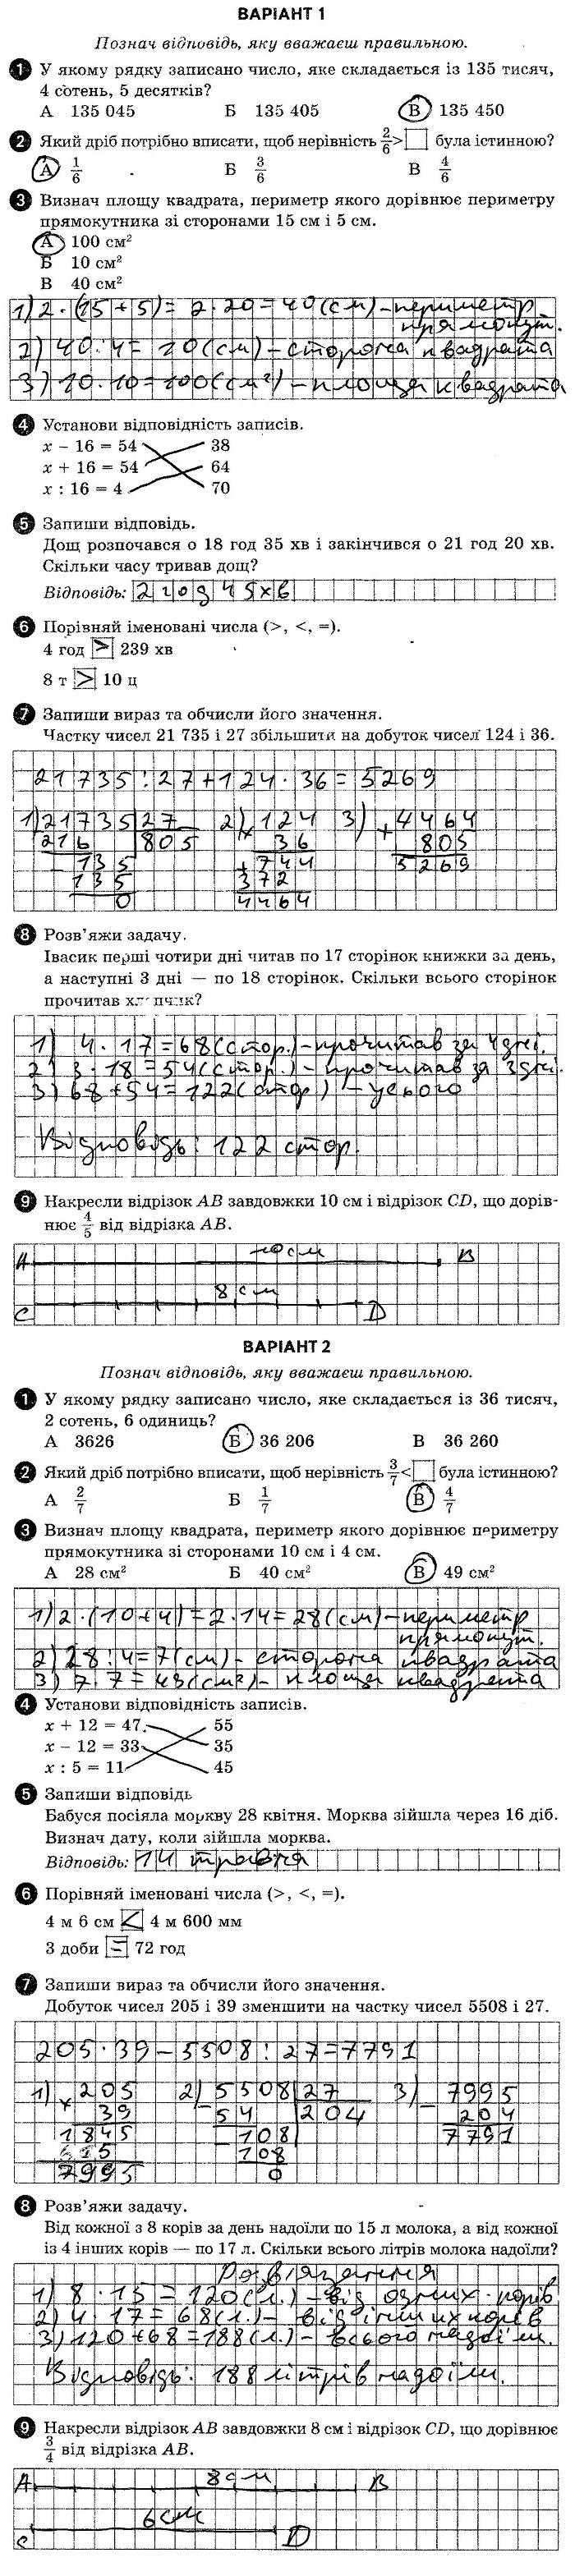 ГДЗ (відповіді) Тестова контрольна робота 3 4 клас ДПА-2020 Математика Шевченко (підсумкові контрольні роботи)